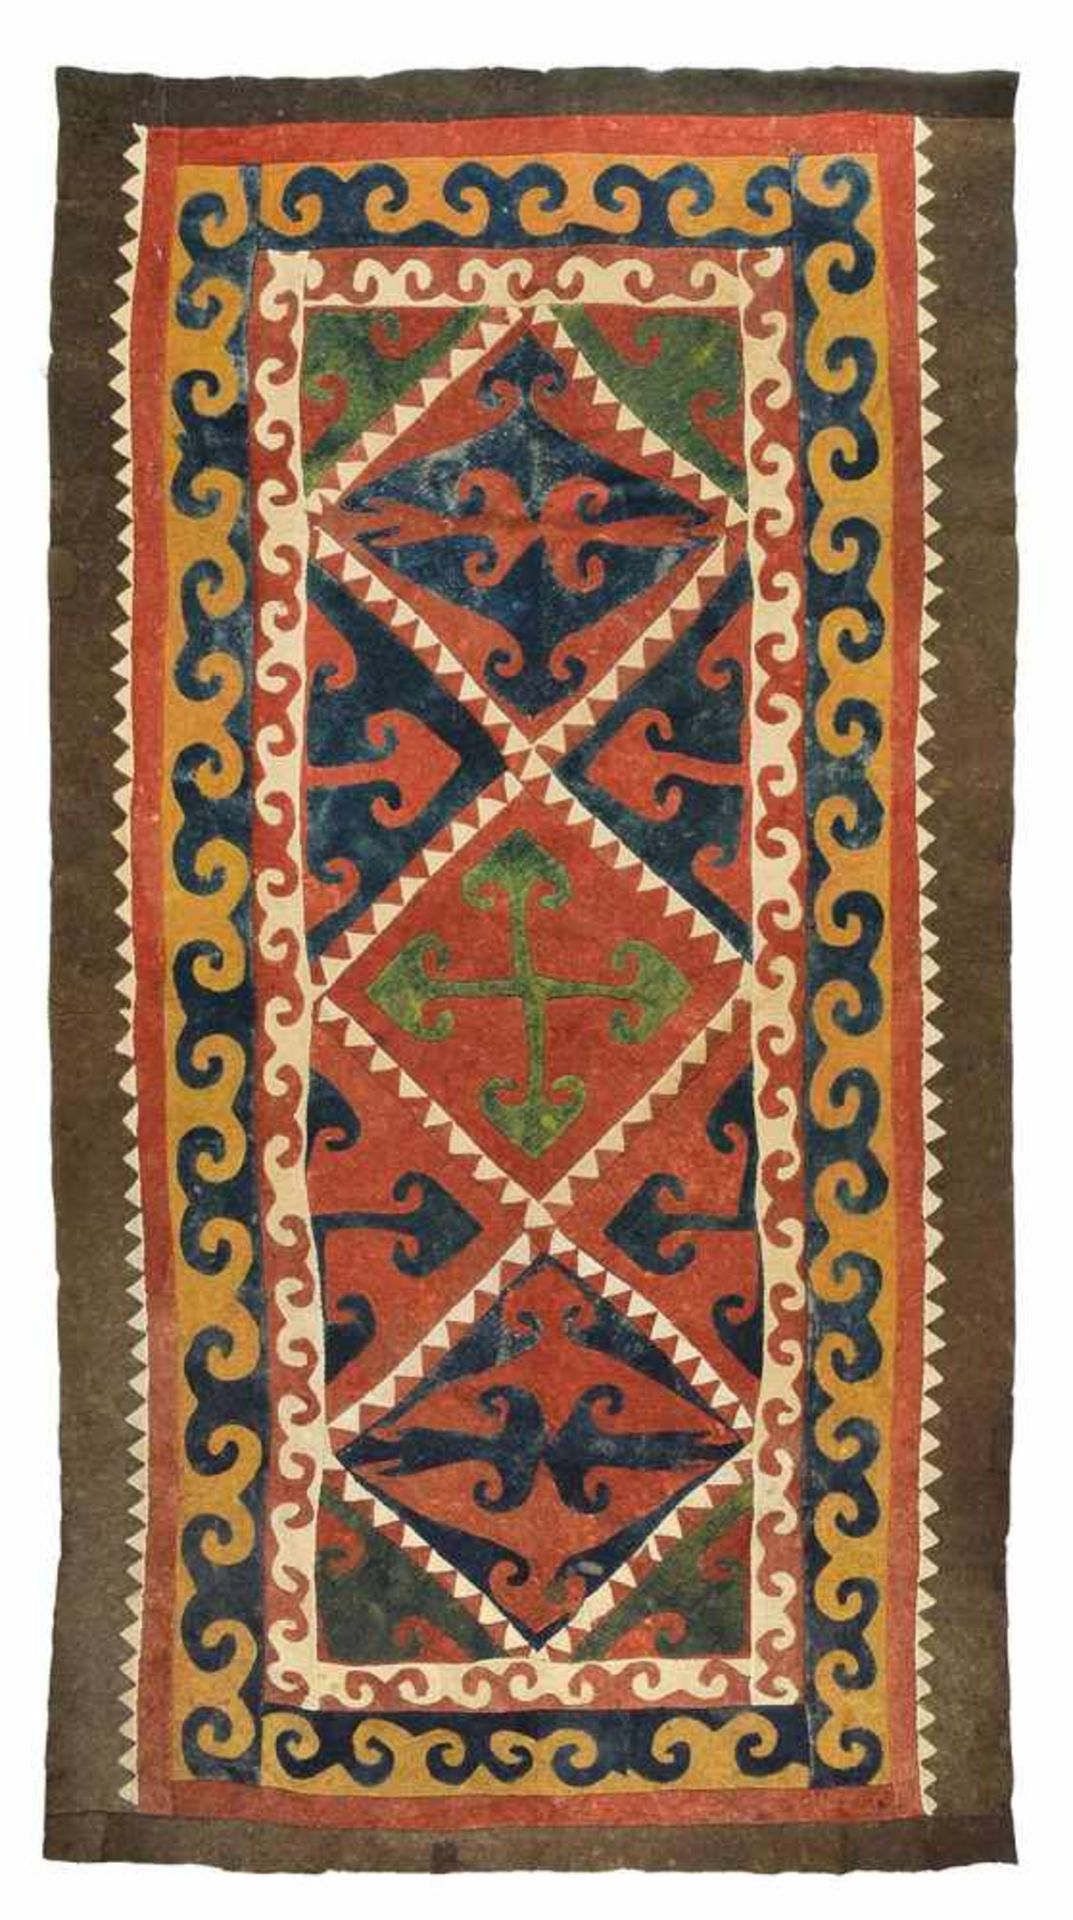 FilzteppichUsbekistan, 19. Jahrhundert350 x 185 cmUrwüchsiger Bodenteppich aus zusammengenähten